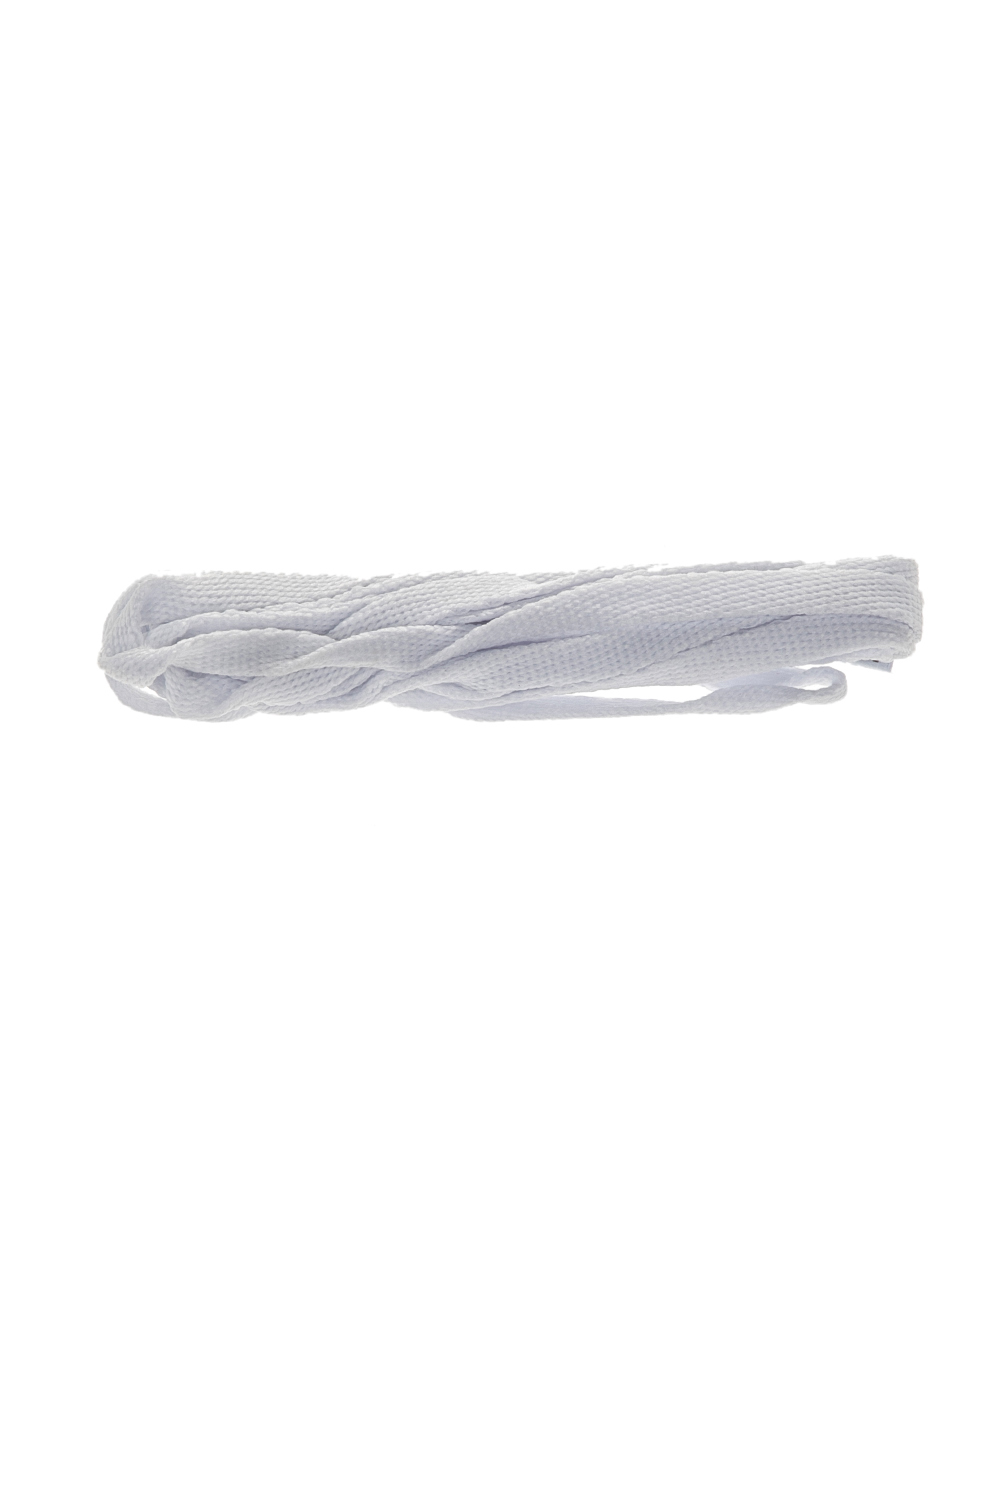 TUBELACES – Unisex κορδόνια TUBELACES WHITE FLAT λευκά